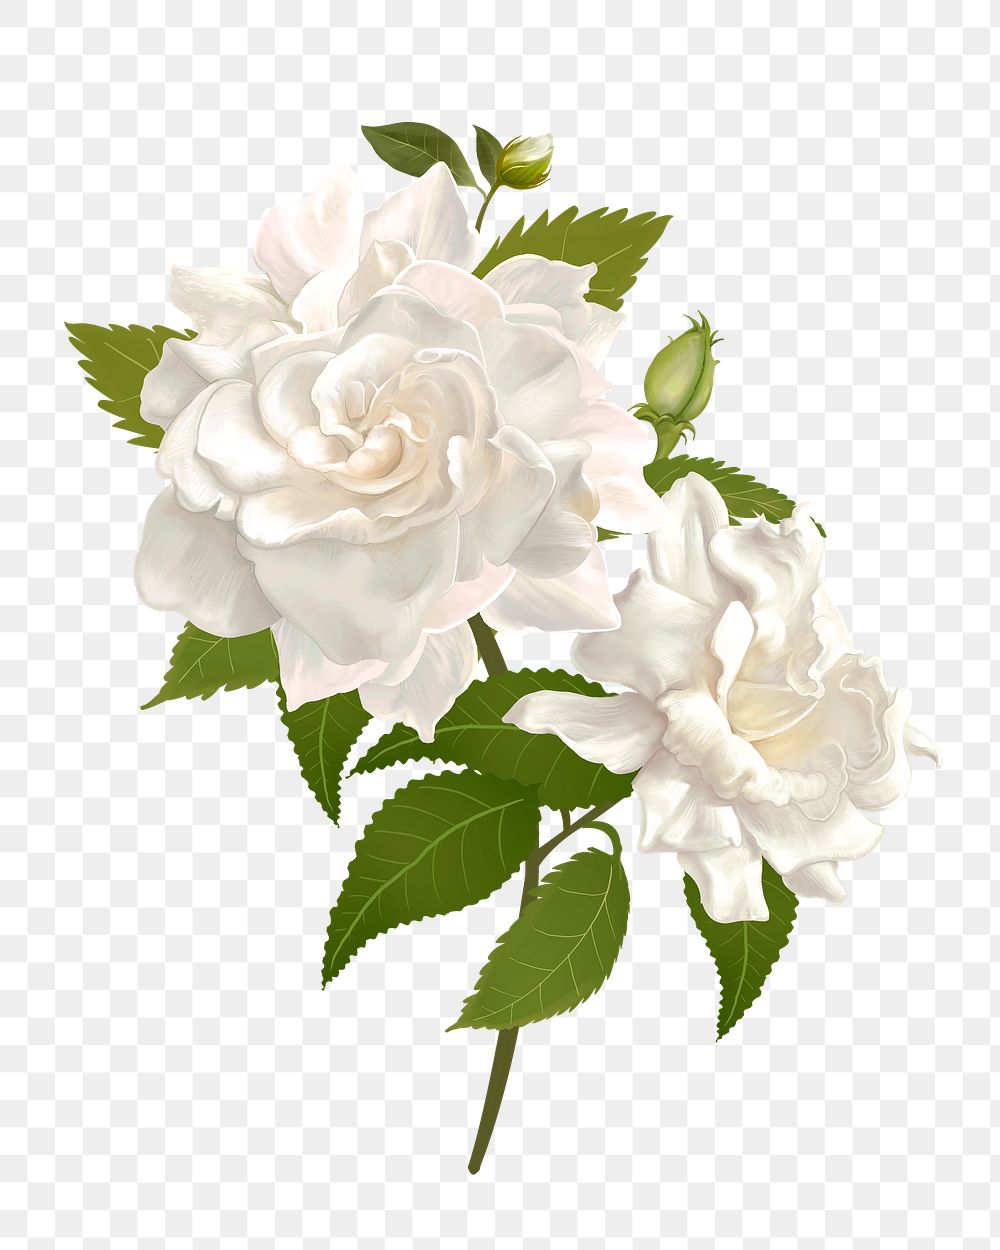 White rose png flower sticker illustration, transparent background